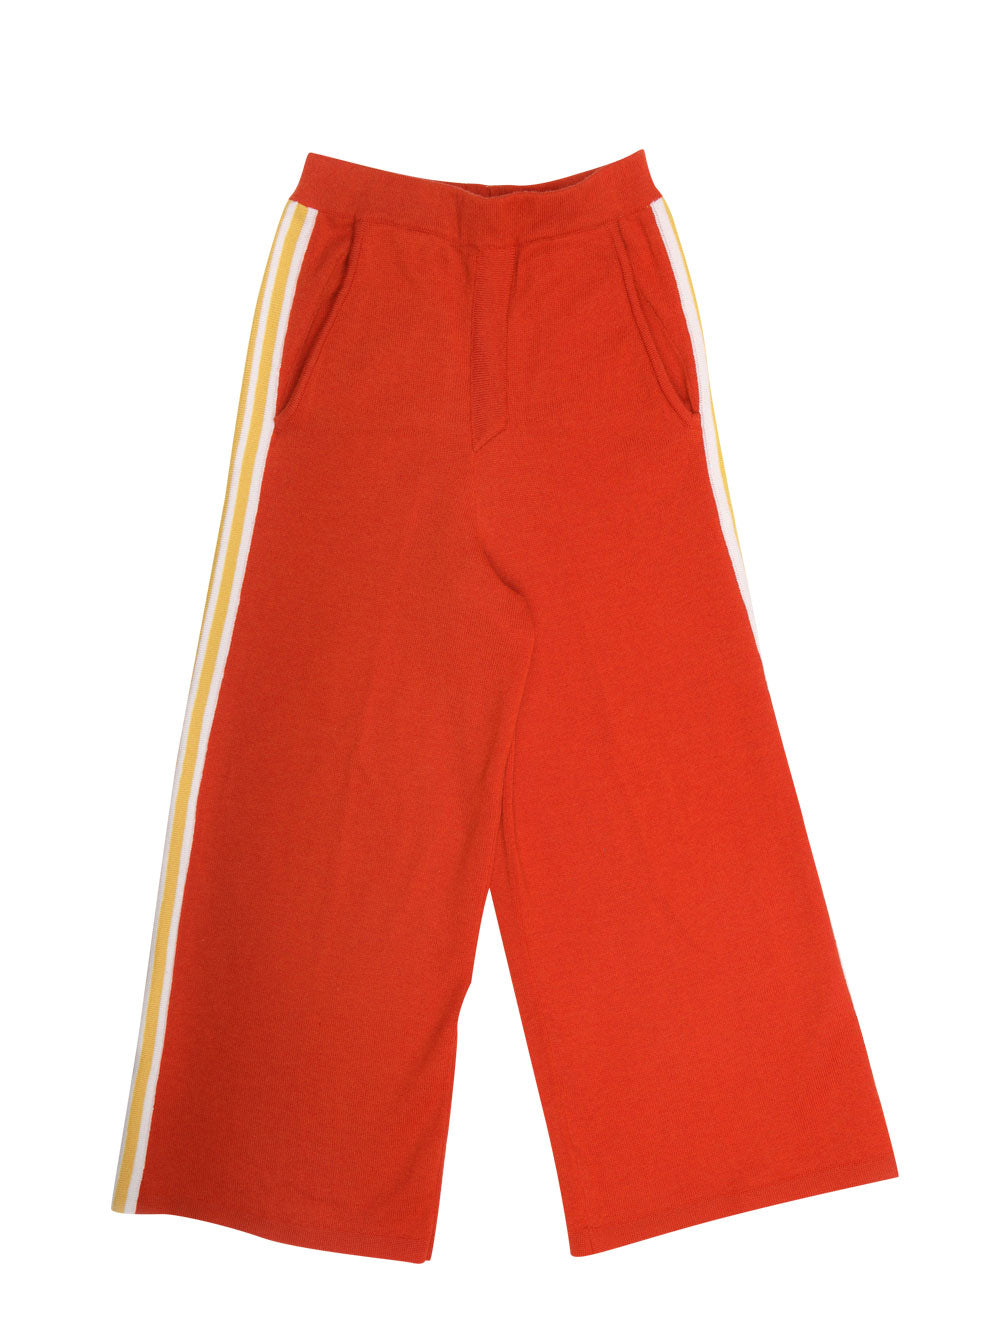 Orange Large Pants